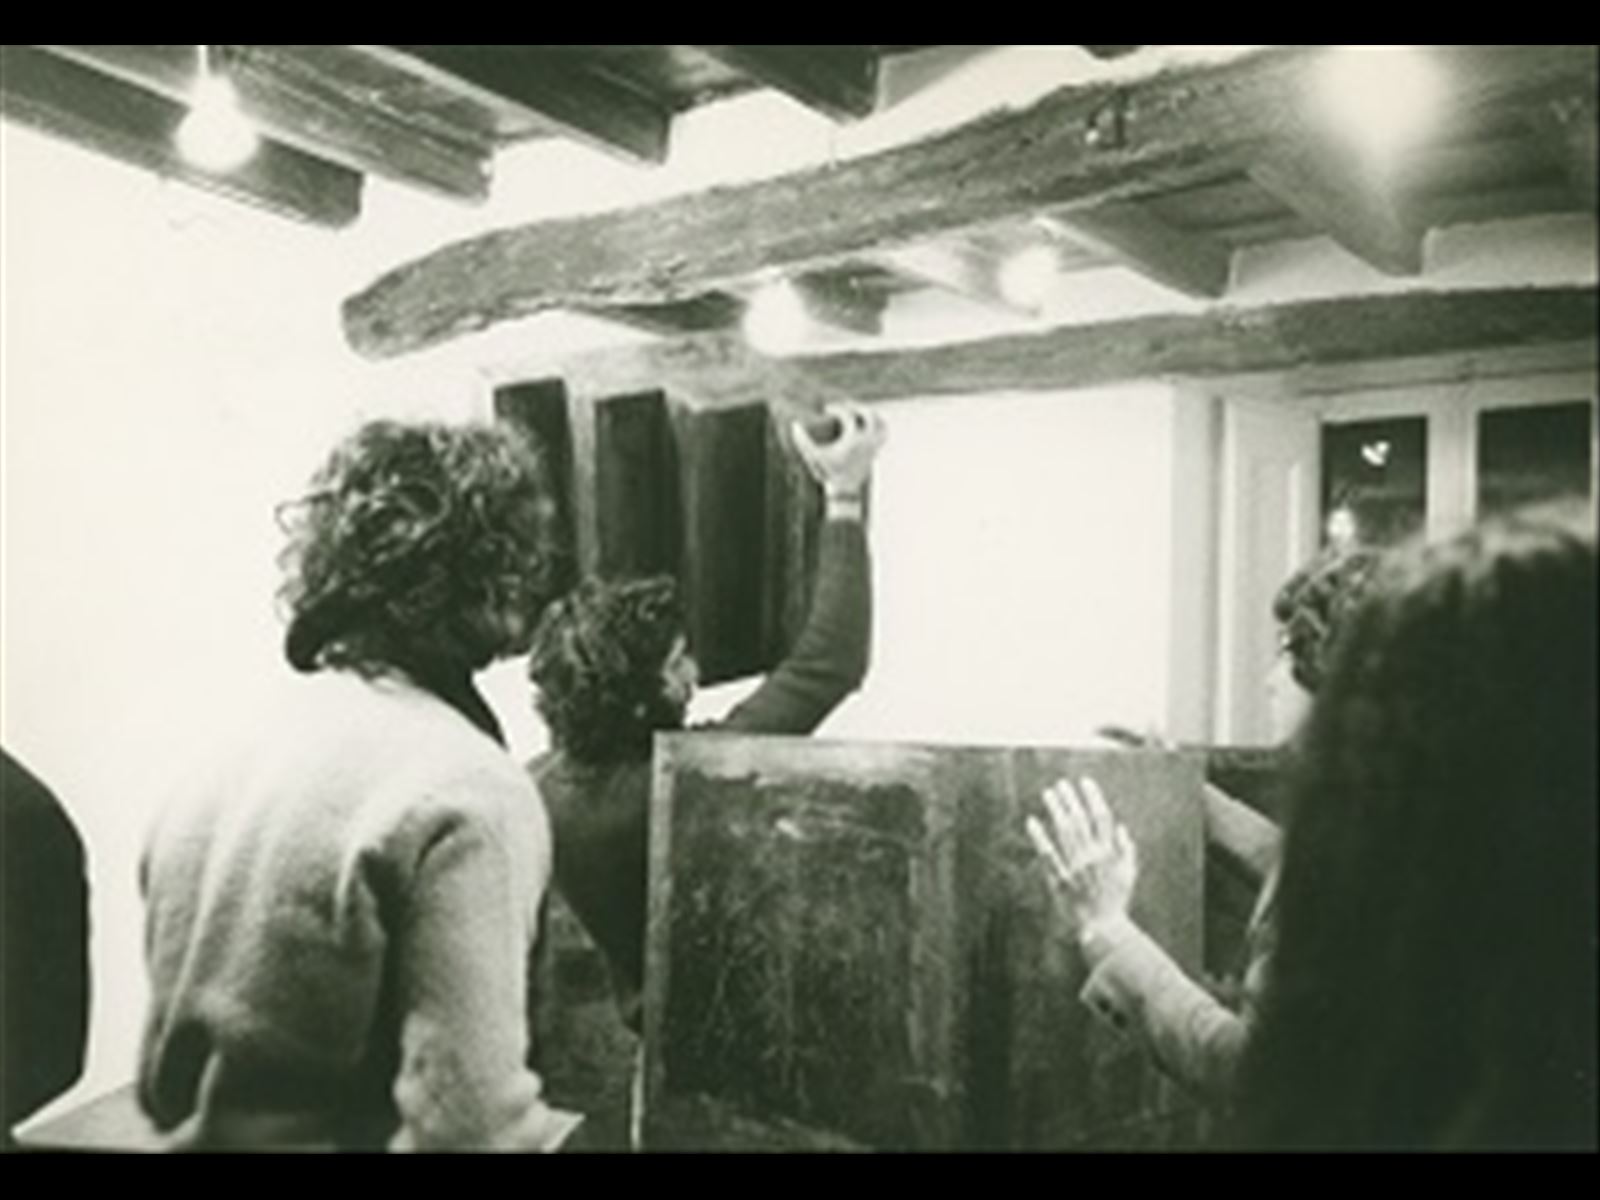 Opening. Costruzione cumulo-parete 60 moduli. Nicola Carrino,  Primo Piano. Roma, 1975. Archivio Nicola Carrino.